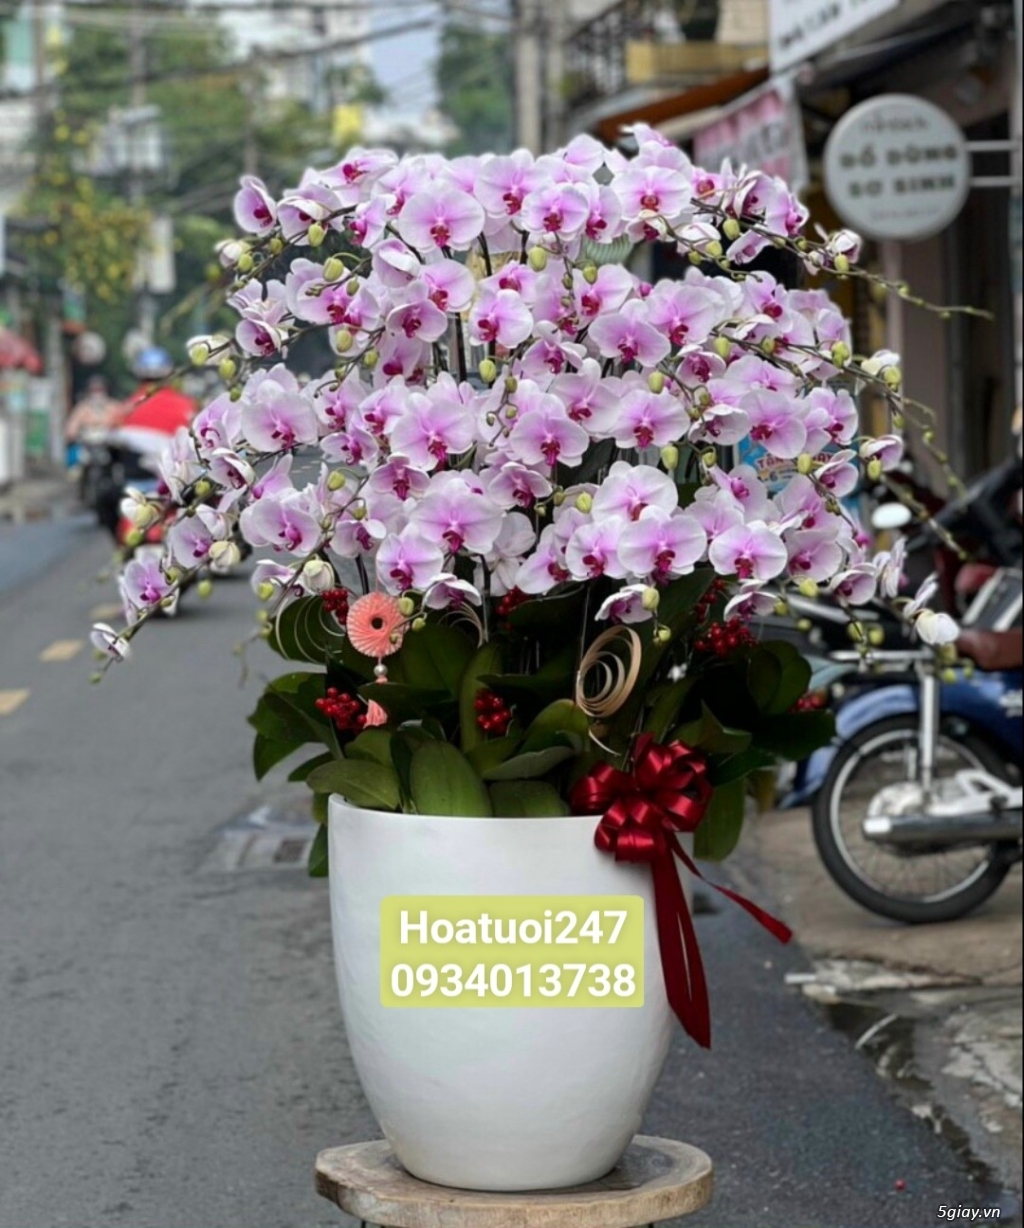 Shop hoa tươi lan hồ điệp tại quận 1 tphcm Lanhodiep247.com - 10